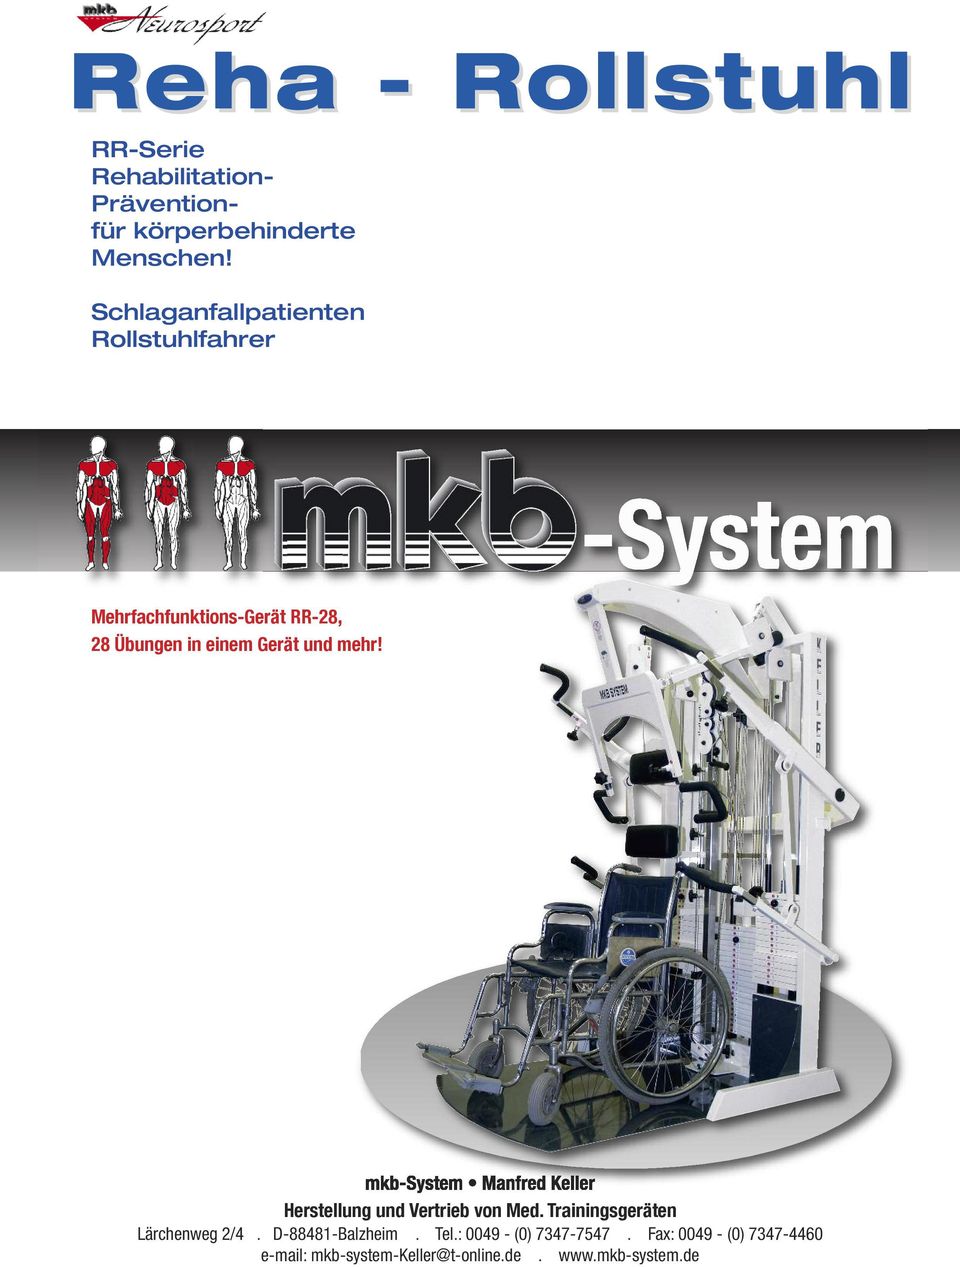 mehr! mkb-system Manfred Keller Herstellung und Vertrieb von Med. Trainingsgeräten Lärchenweg 2/4.